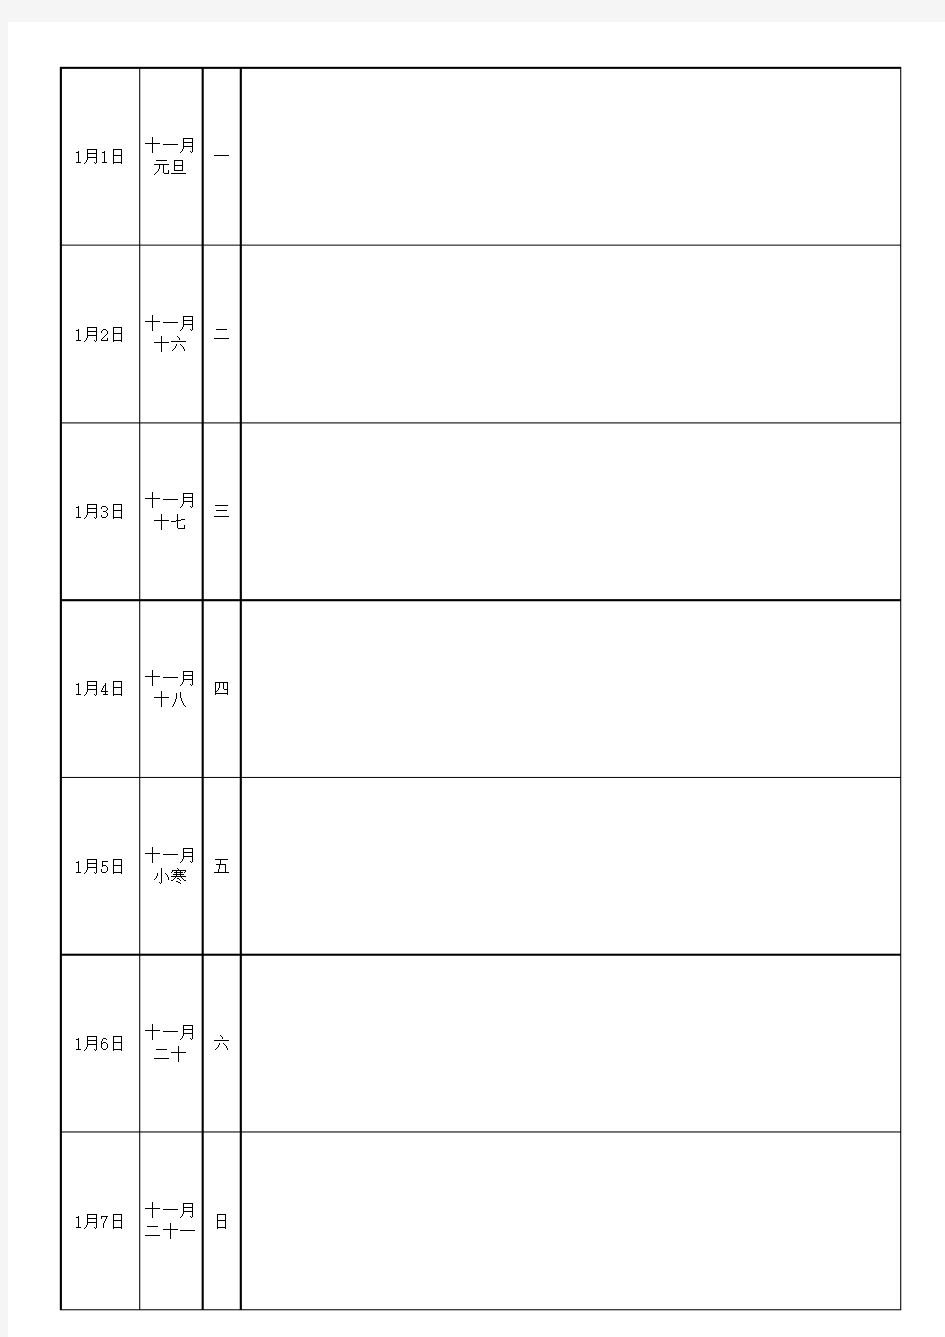 2018日历、周历、年历、工作日志(简洁)(按周排列-A4纸打印)